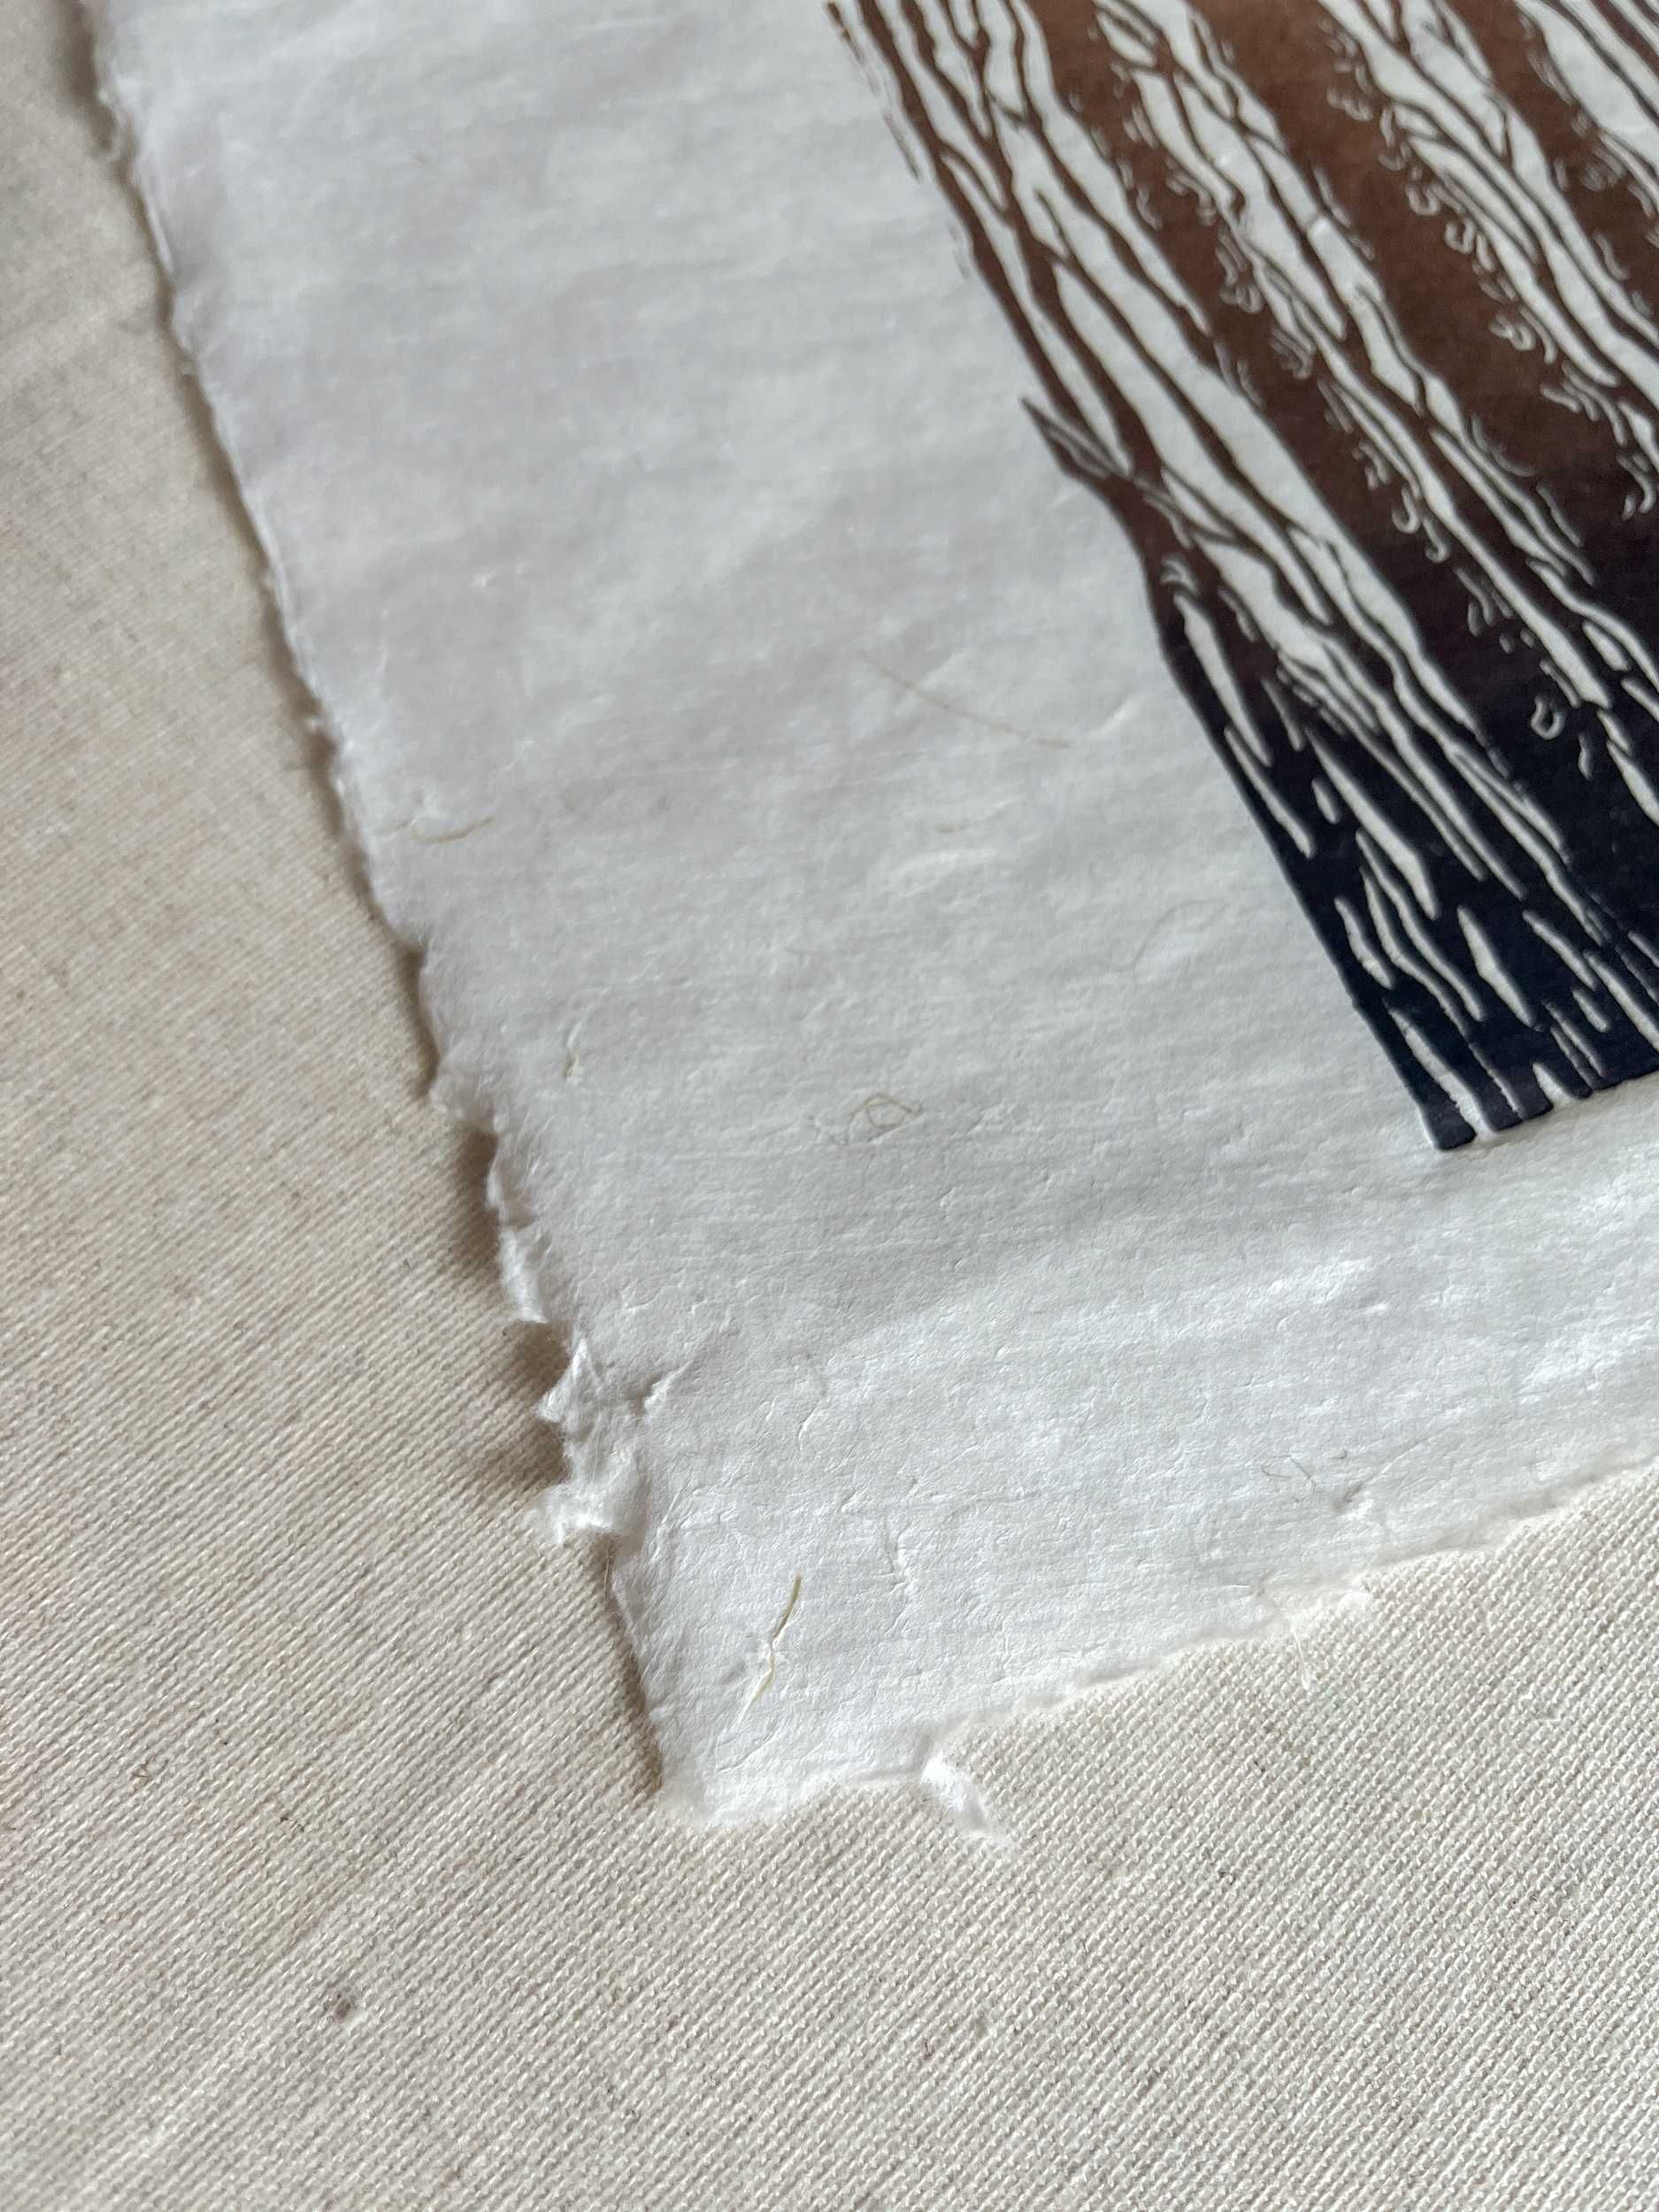 Linoryt na jap. papierze Kozo z bambusem i słomą ryżową w białej ramce